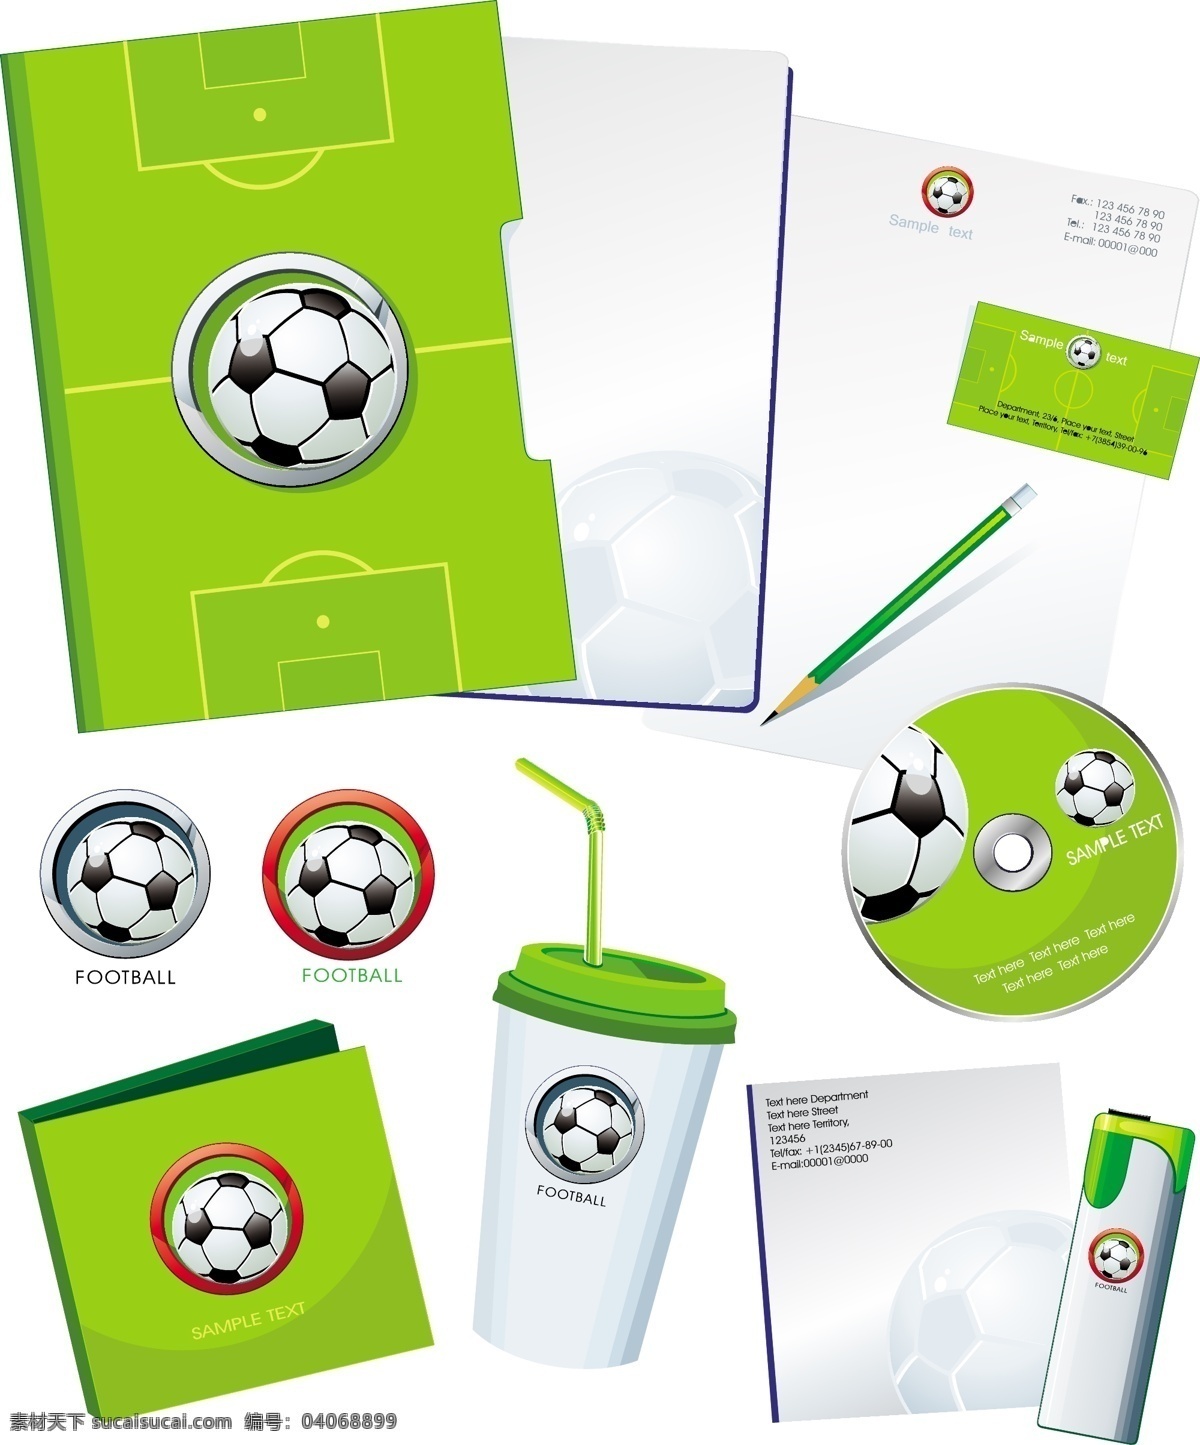 足球 主题 画册 cd vi 光盘 名片 矢量素材 世界杯 文件夹 信封 足球场 名片卡 其他名片